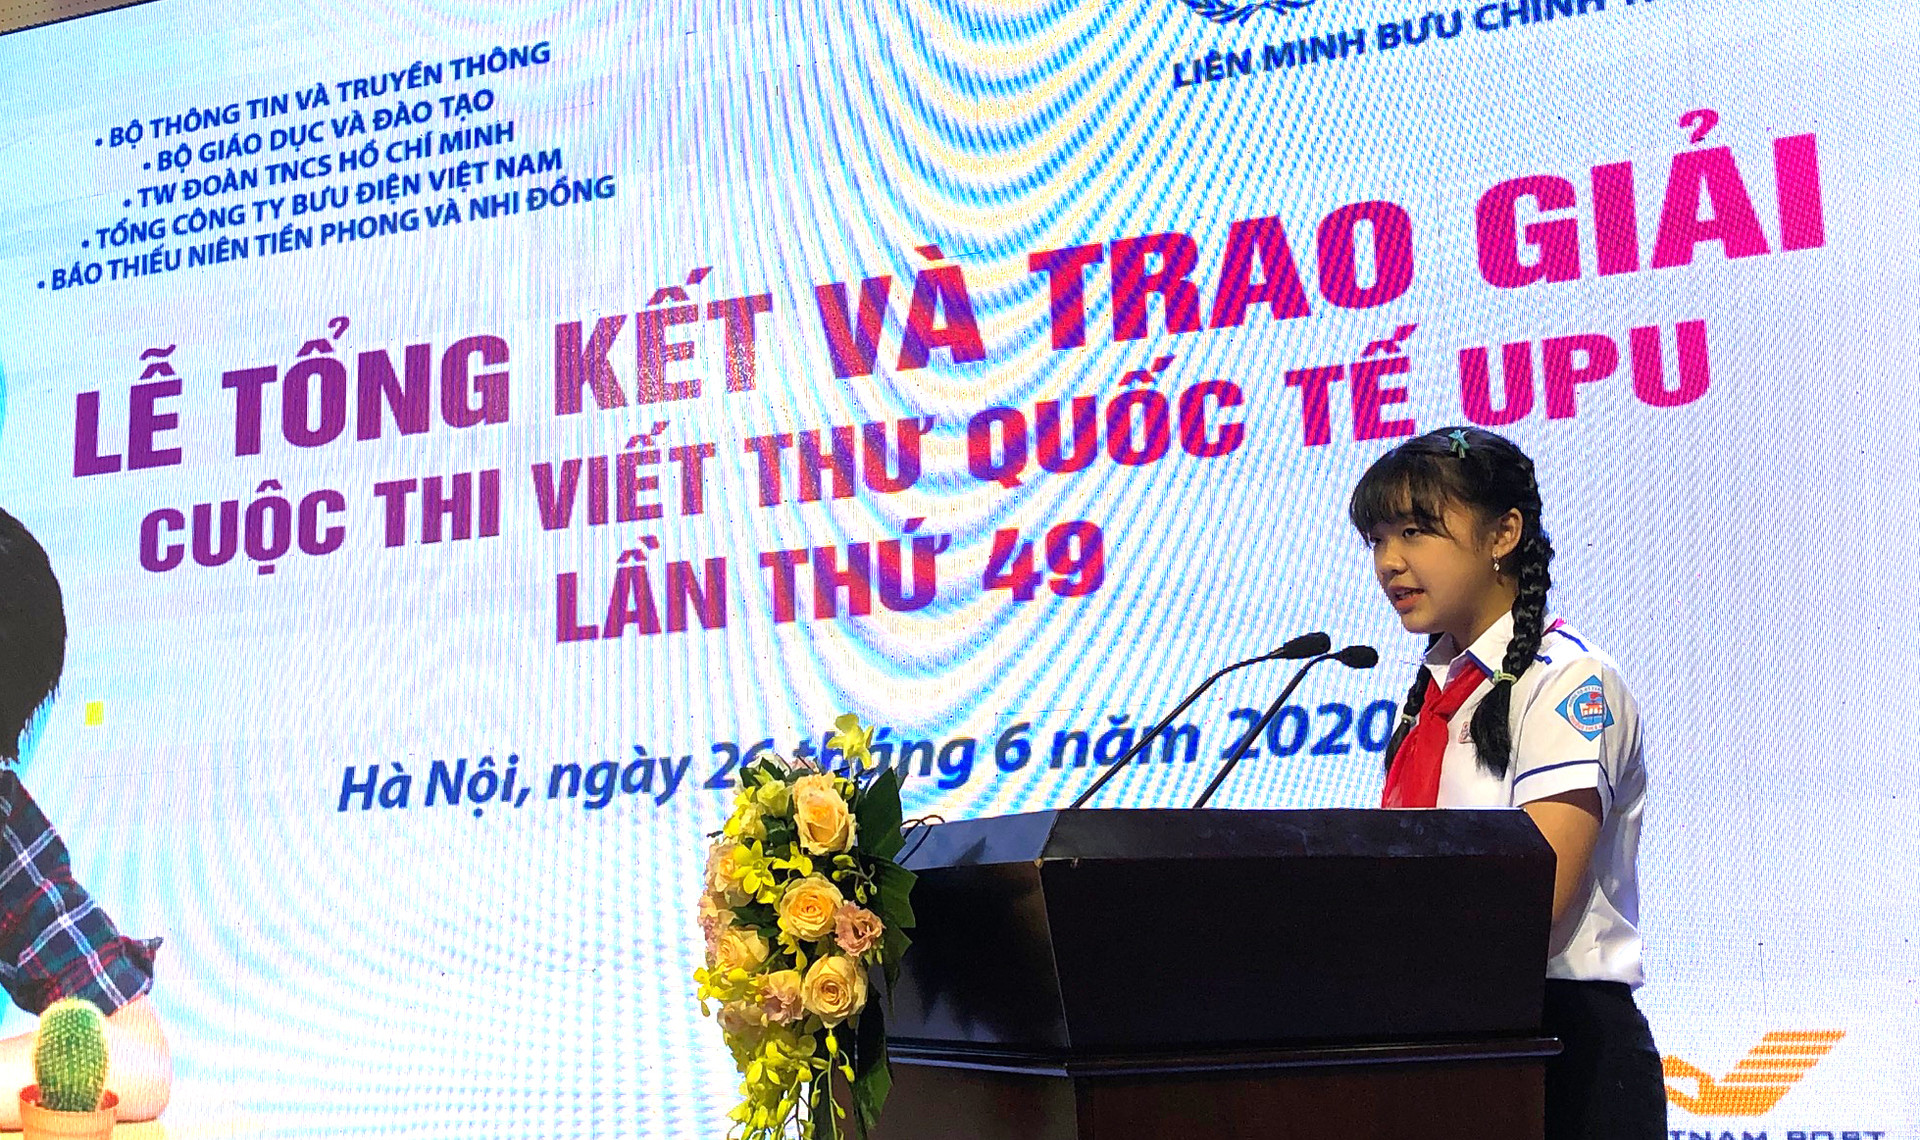 Thông điệp về môi trường của học sinh Thừa Thiên Huế đạt giải Nhất cuộc thi viết thư UPU - Ảnh 2.